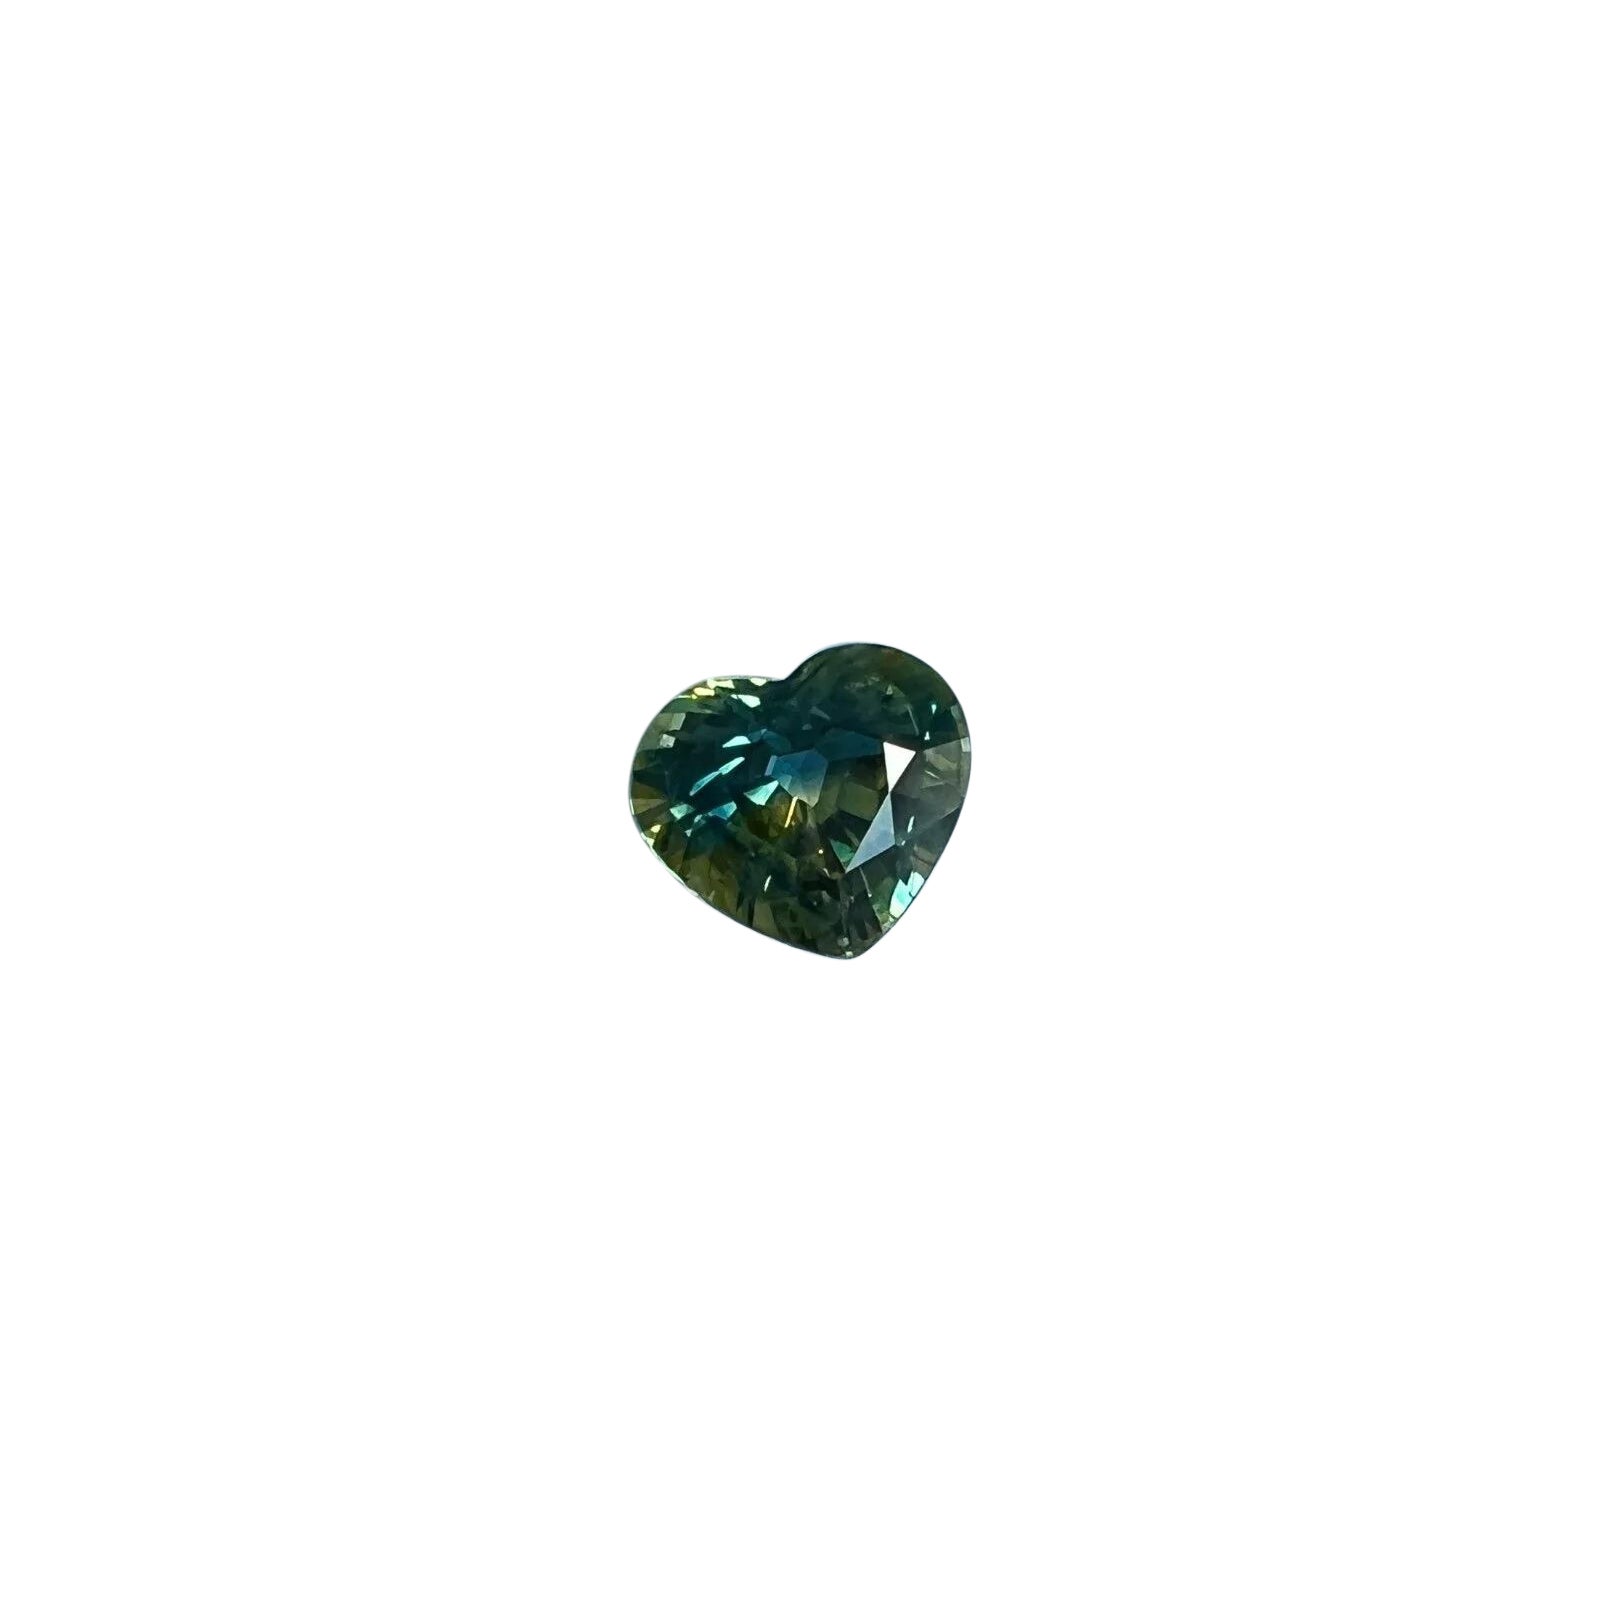 Saphir australien bleu vert bicolore non chauffé taille cœur certifié IGI de 1,01 carat